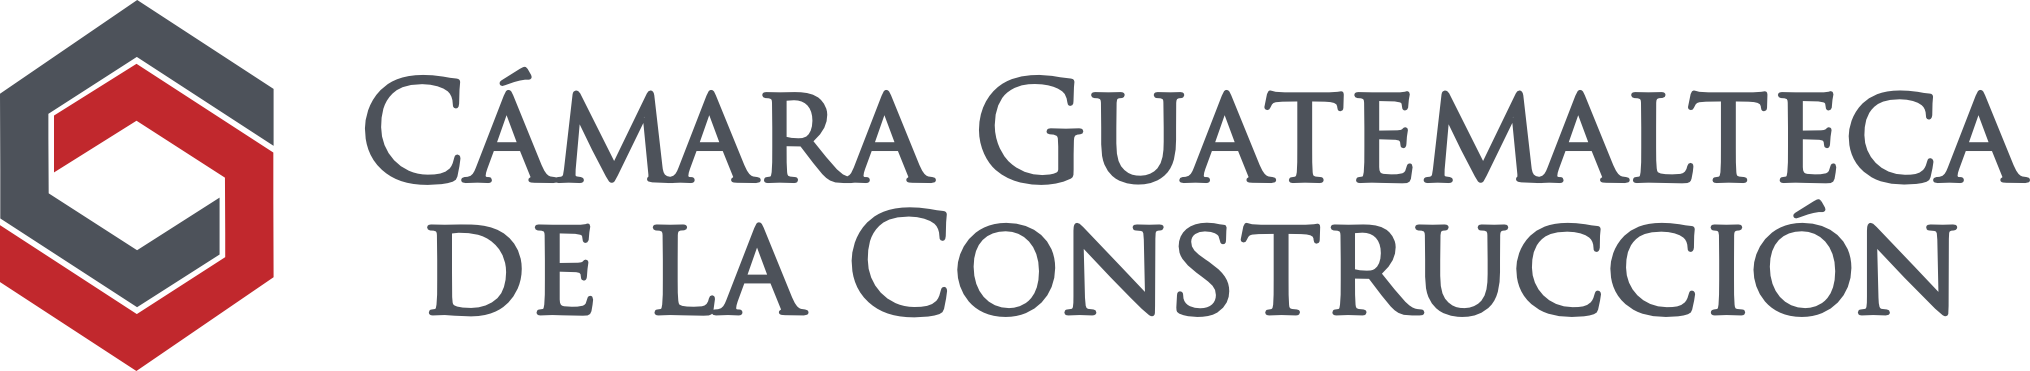 Eventos Cámara Guatemalteca de la Construcción